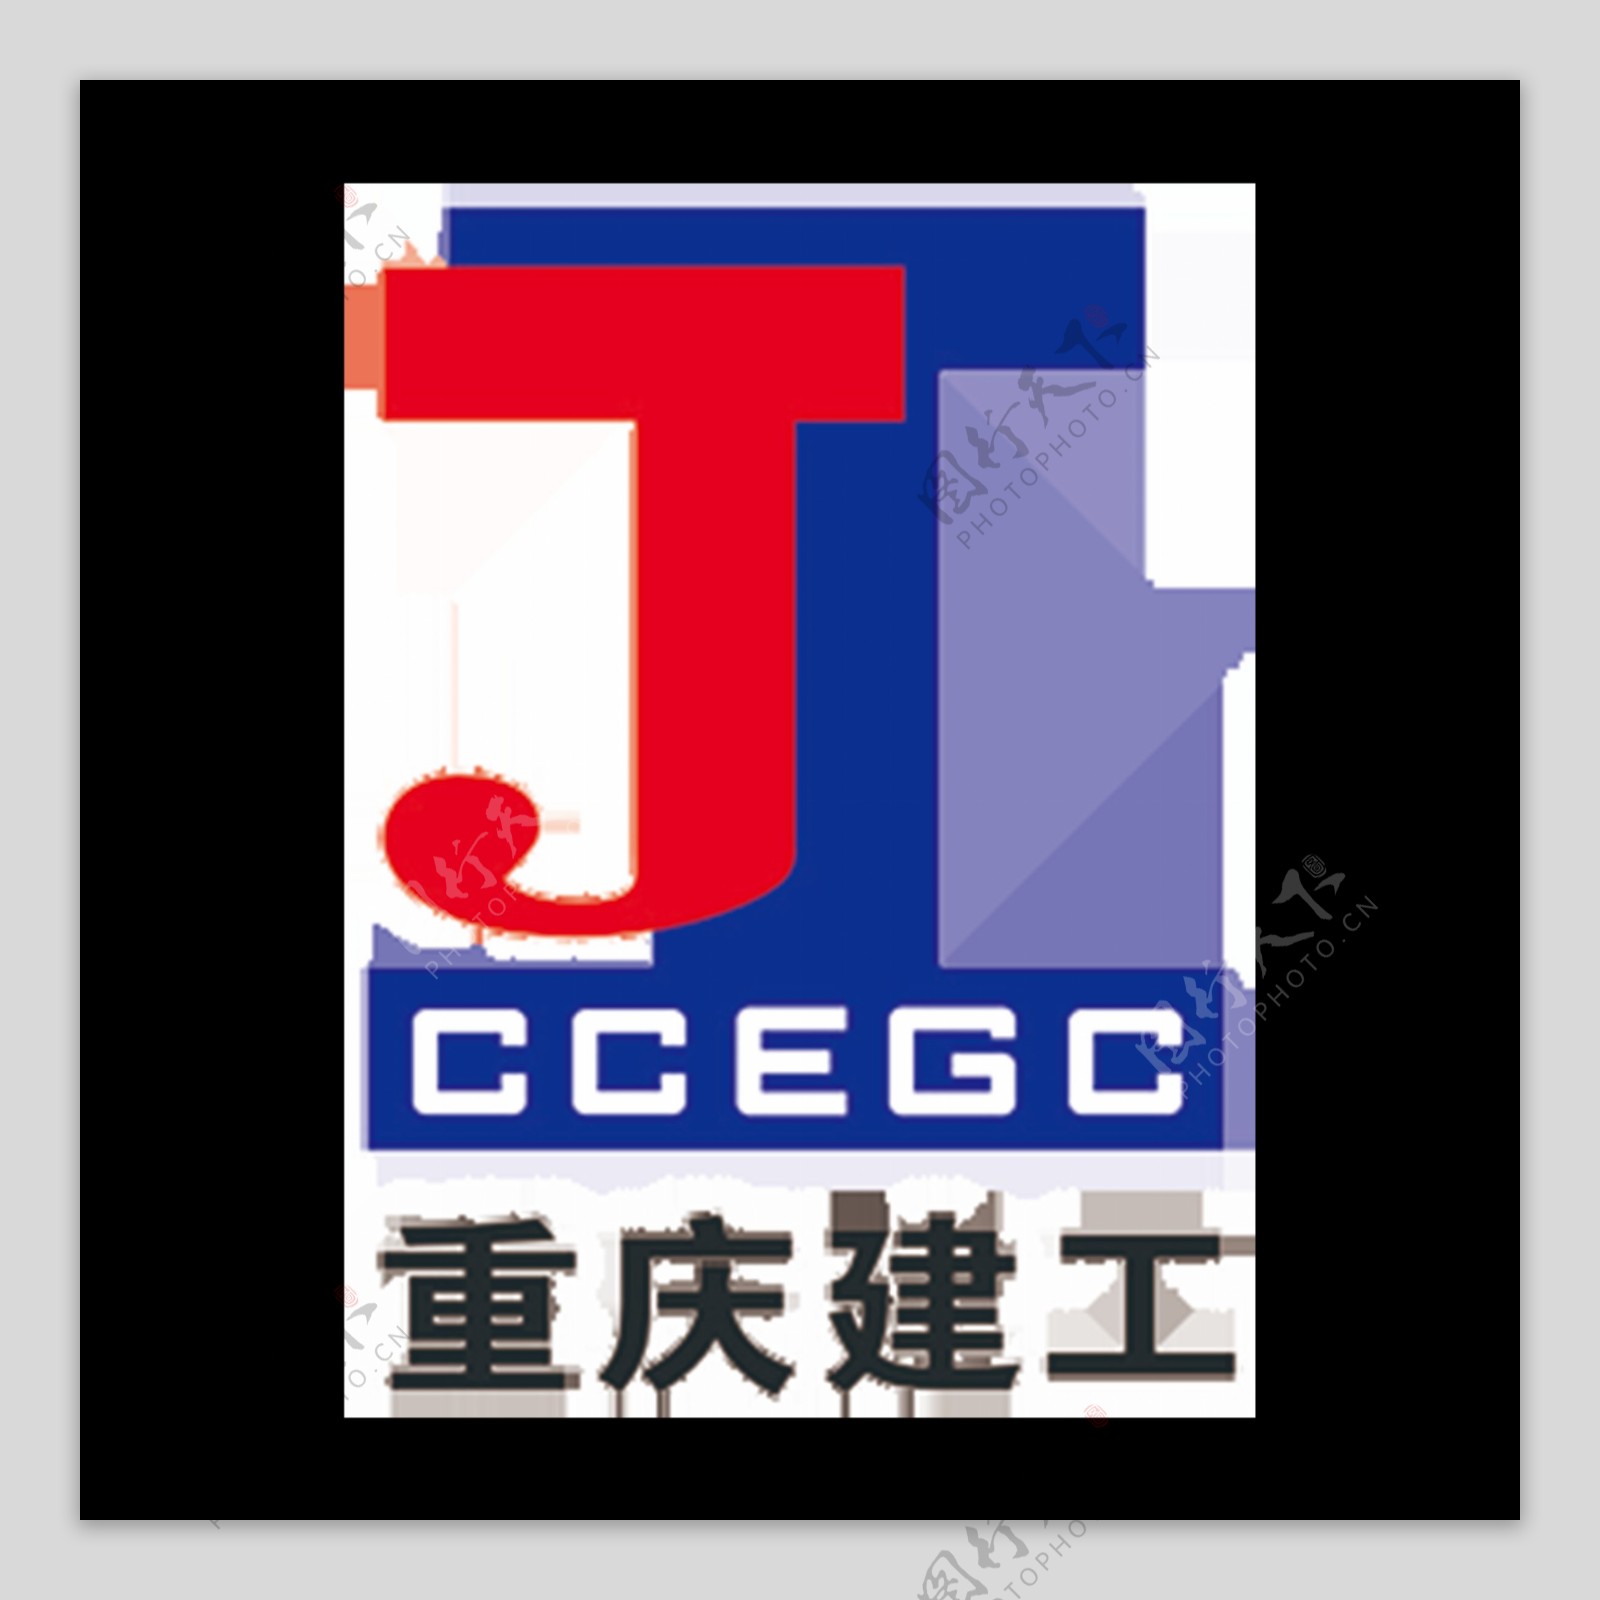 重庆建工logo